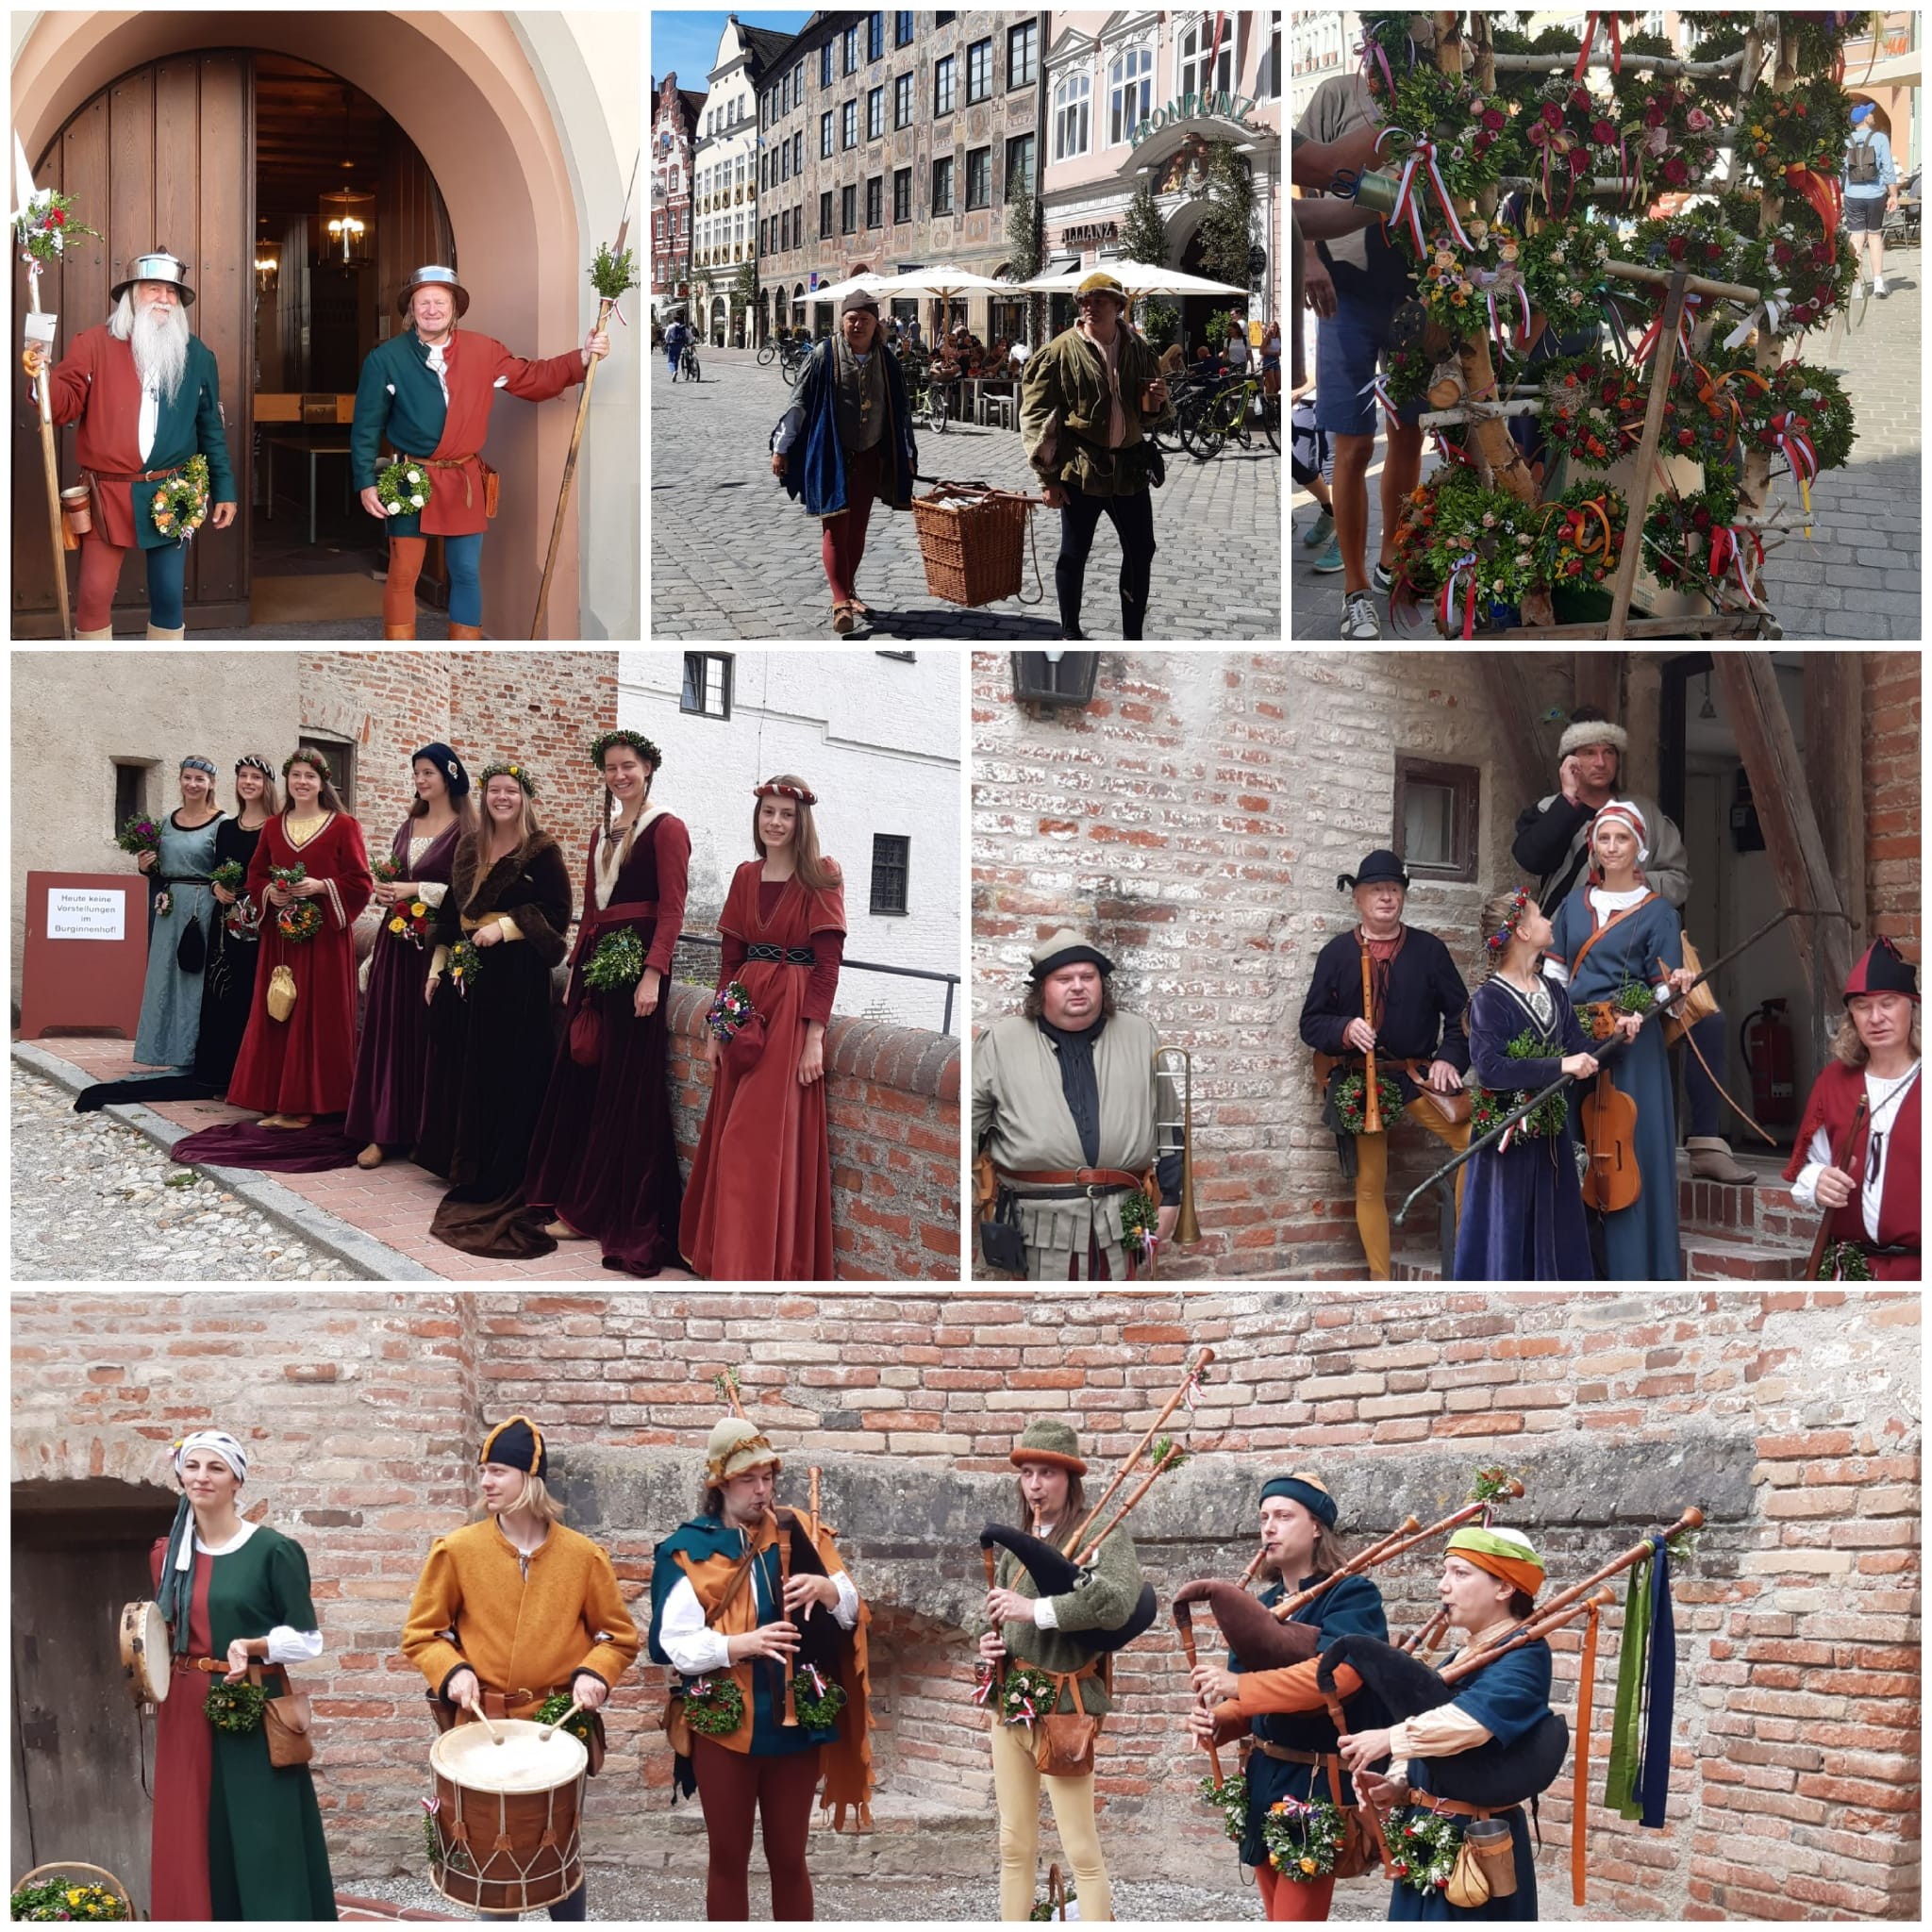 Les fêtes vues par le groupe qui a eu la chance de venir à Landshut